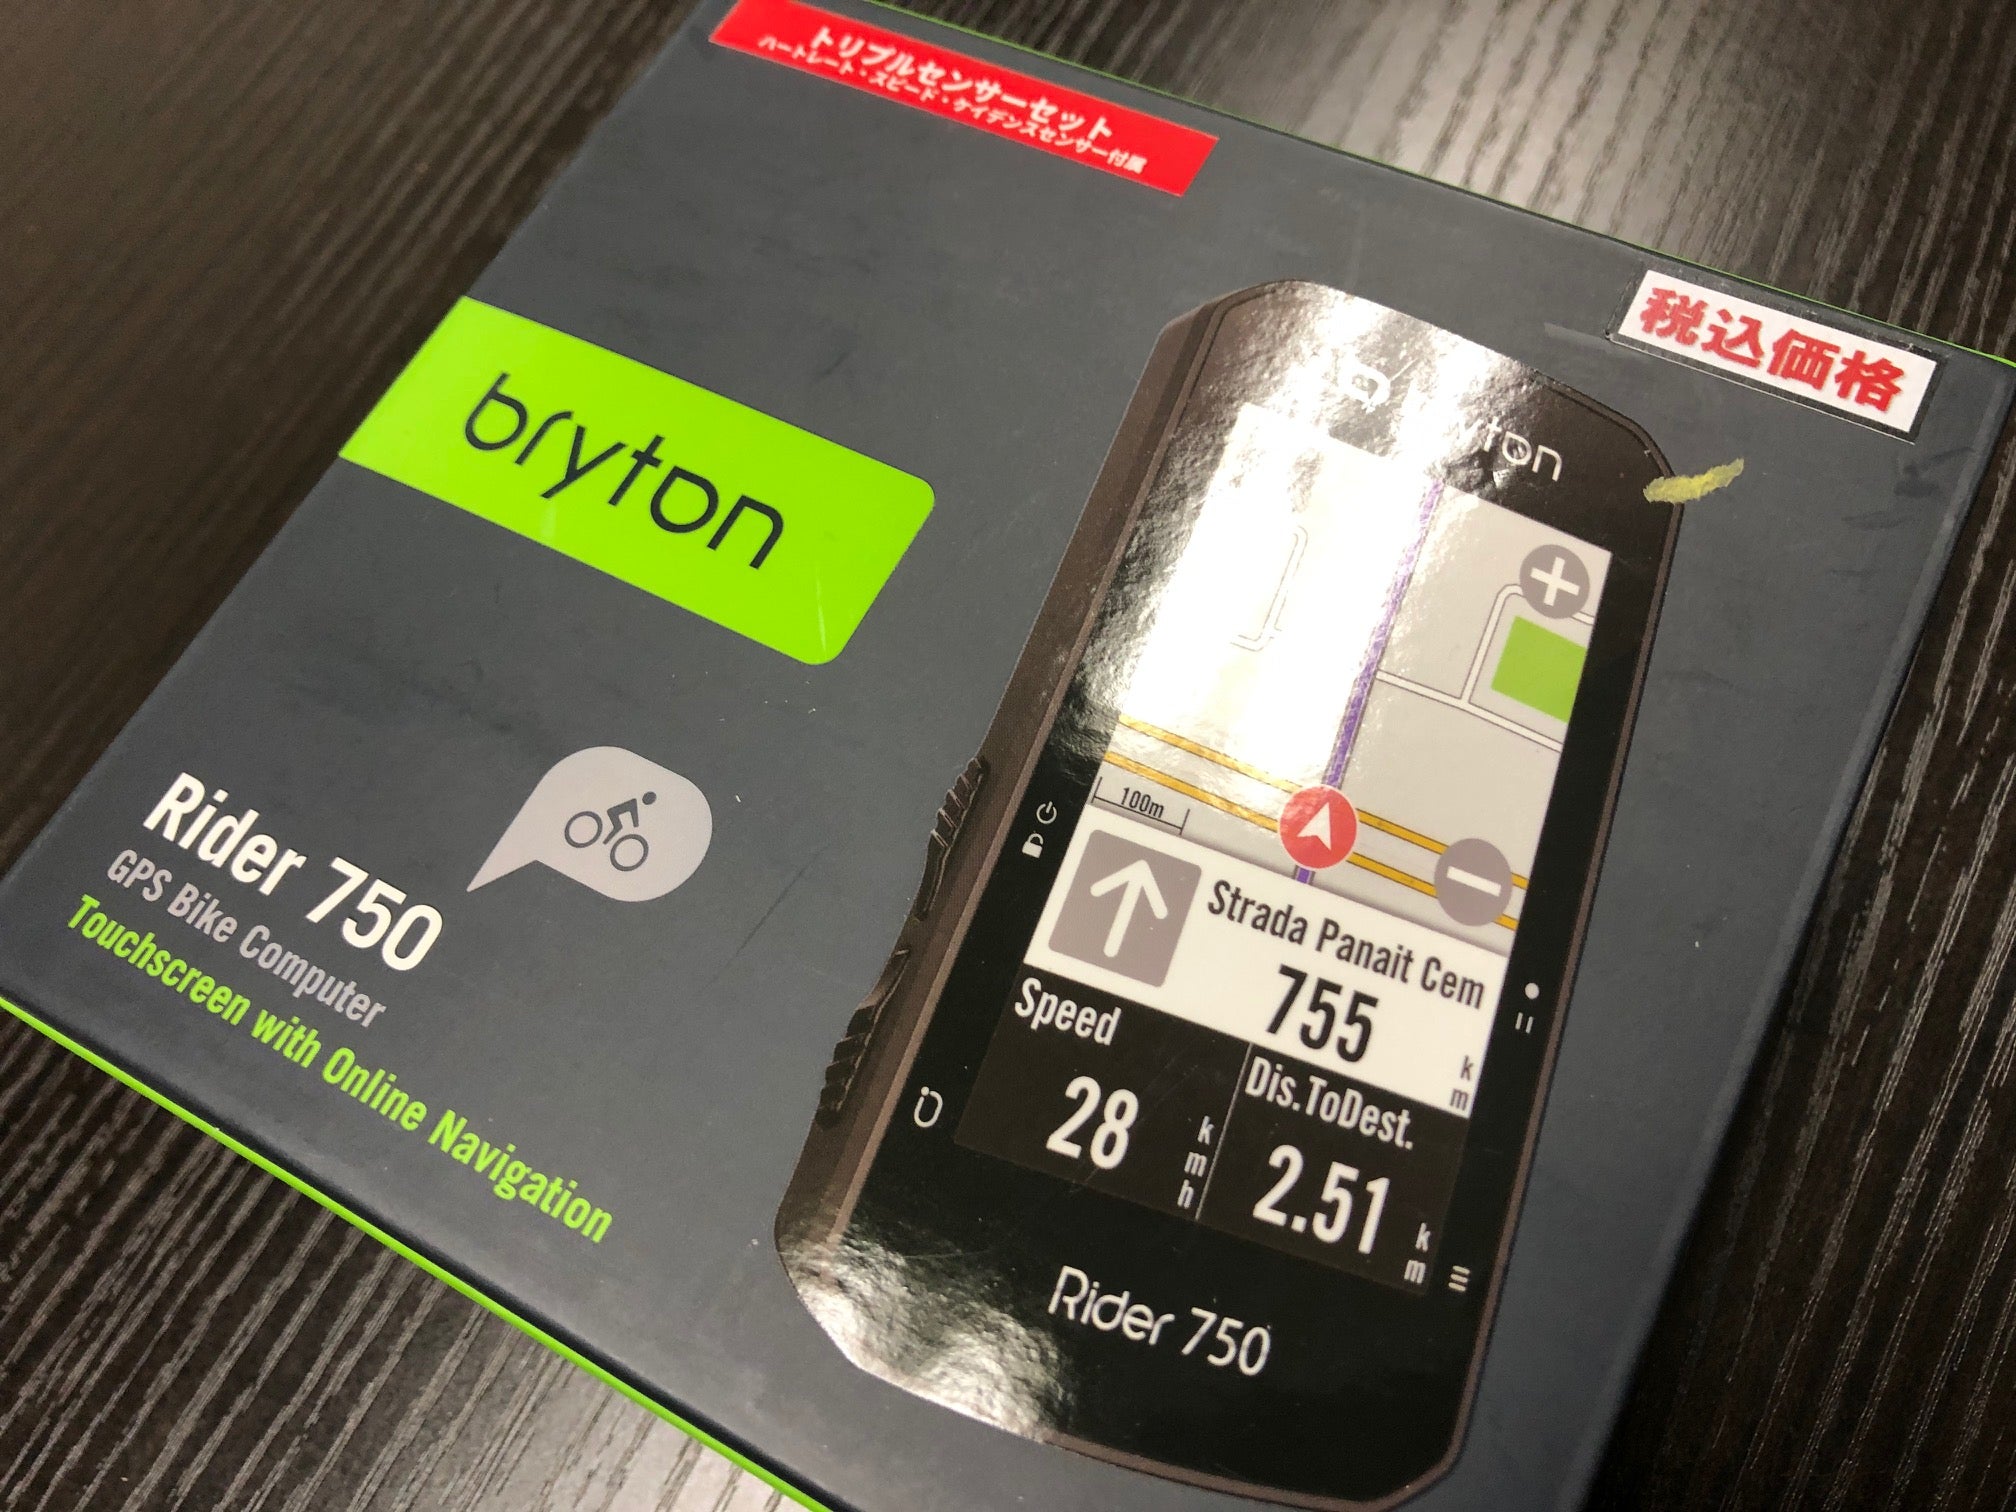 33303円 新しい季節 Bryton ブライトン Rider 750 ライダー750 GPSサイクルコンピューター サイコン 750T